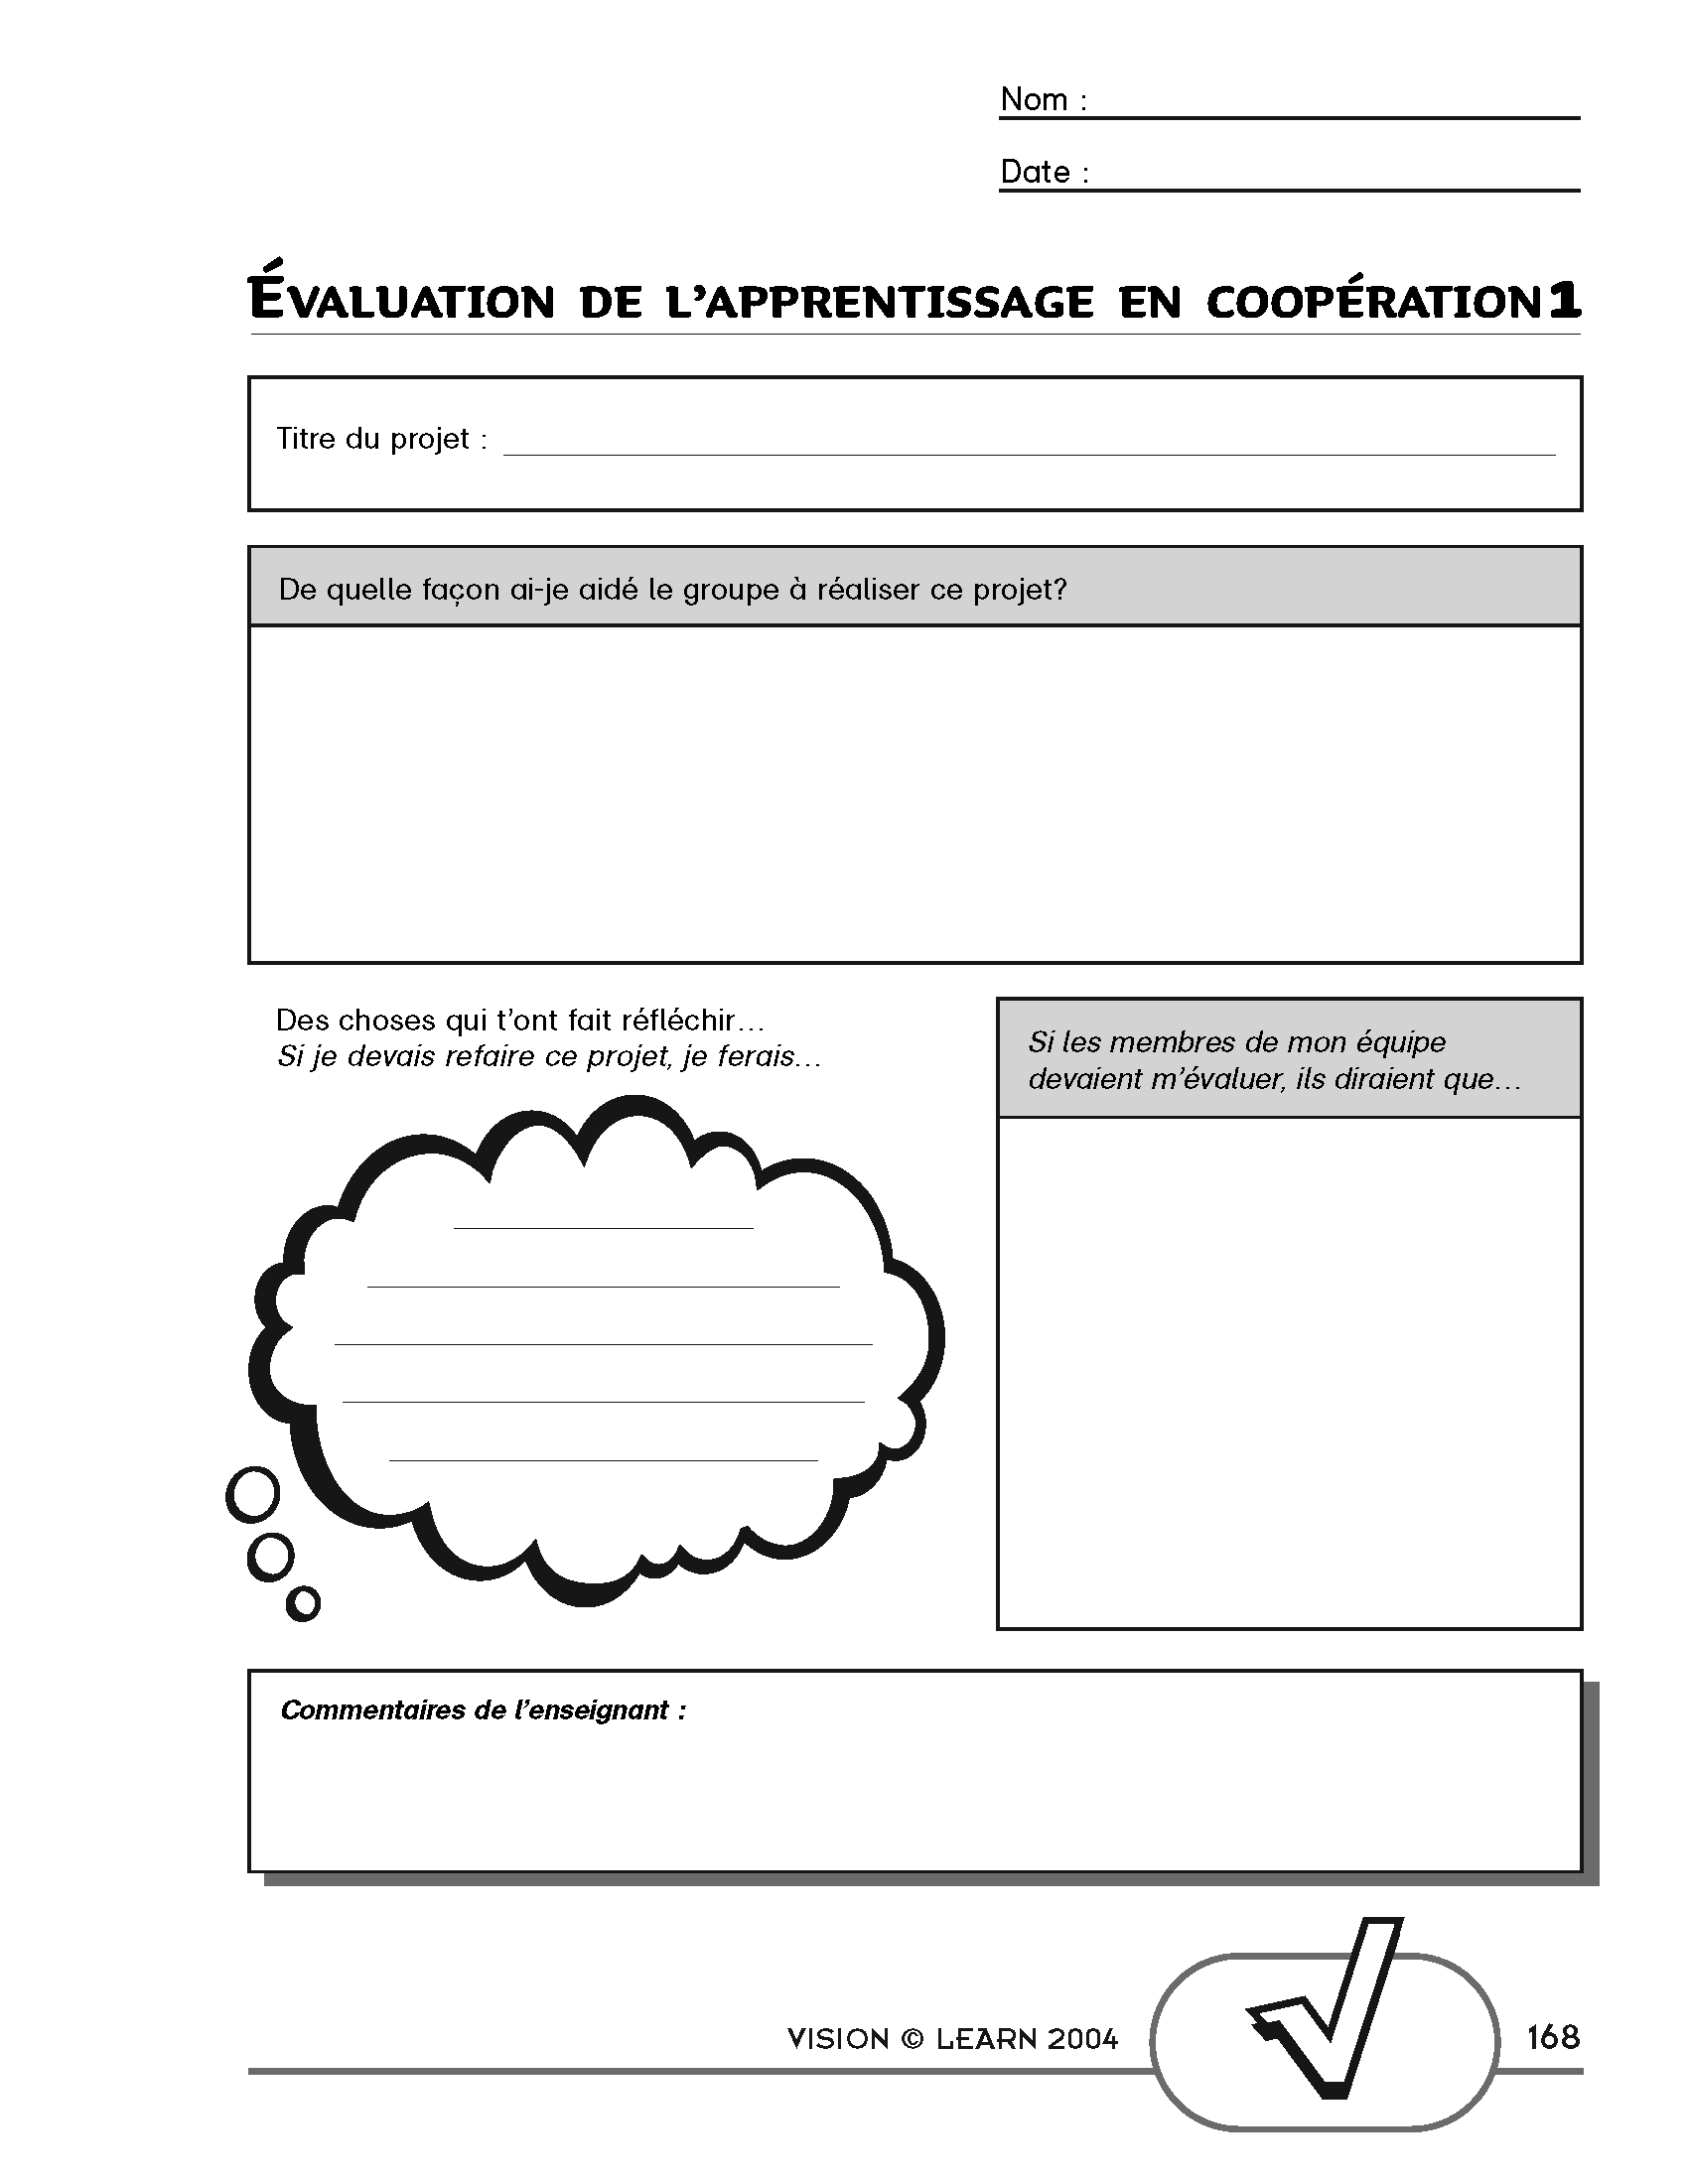 Evaluation de l'apprentissage en cooperation 1